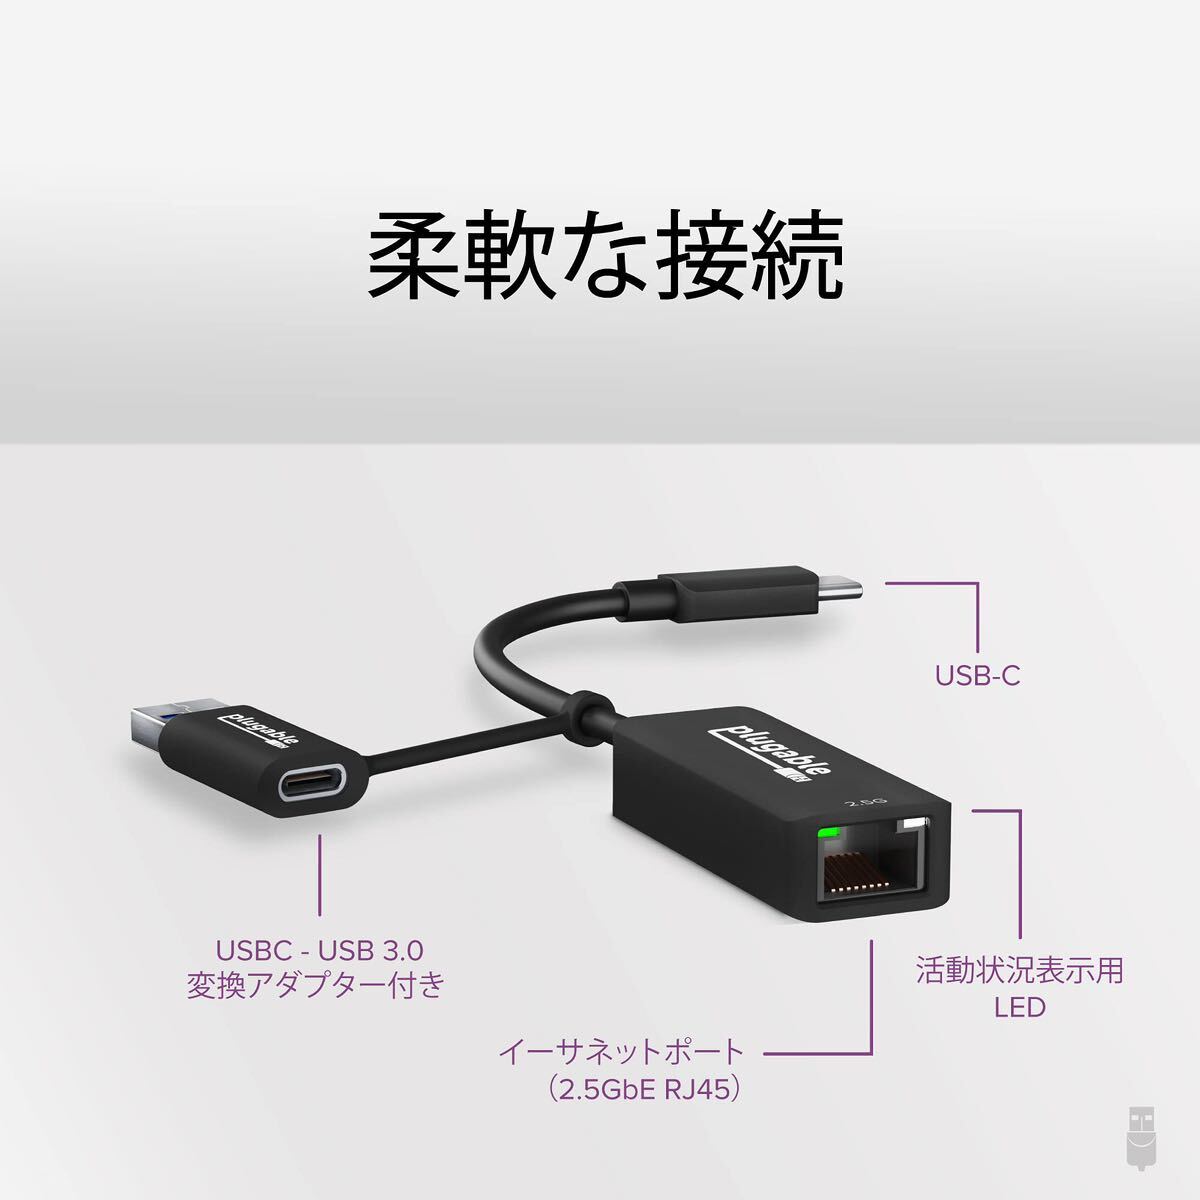 USB イーサネットアダプター 2.5Gbps ネットワーク Type-C USB3.0 対応 有線 LAN Windows macOS Linux 互換